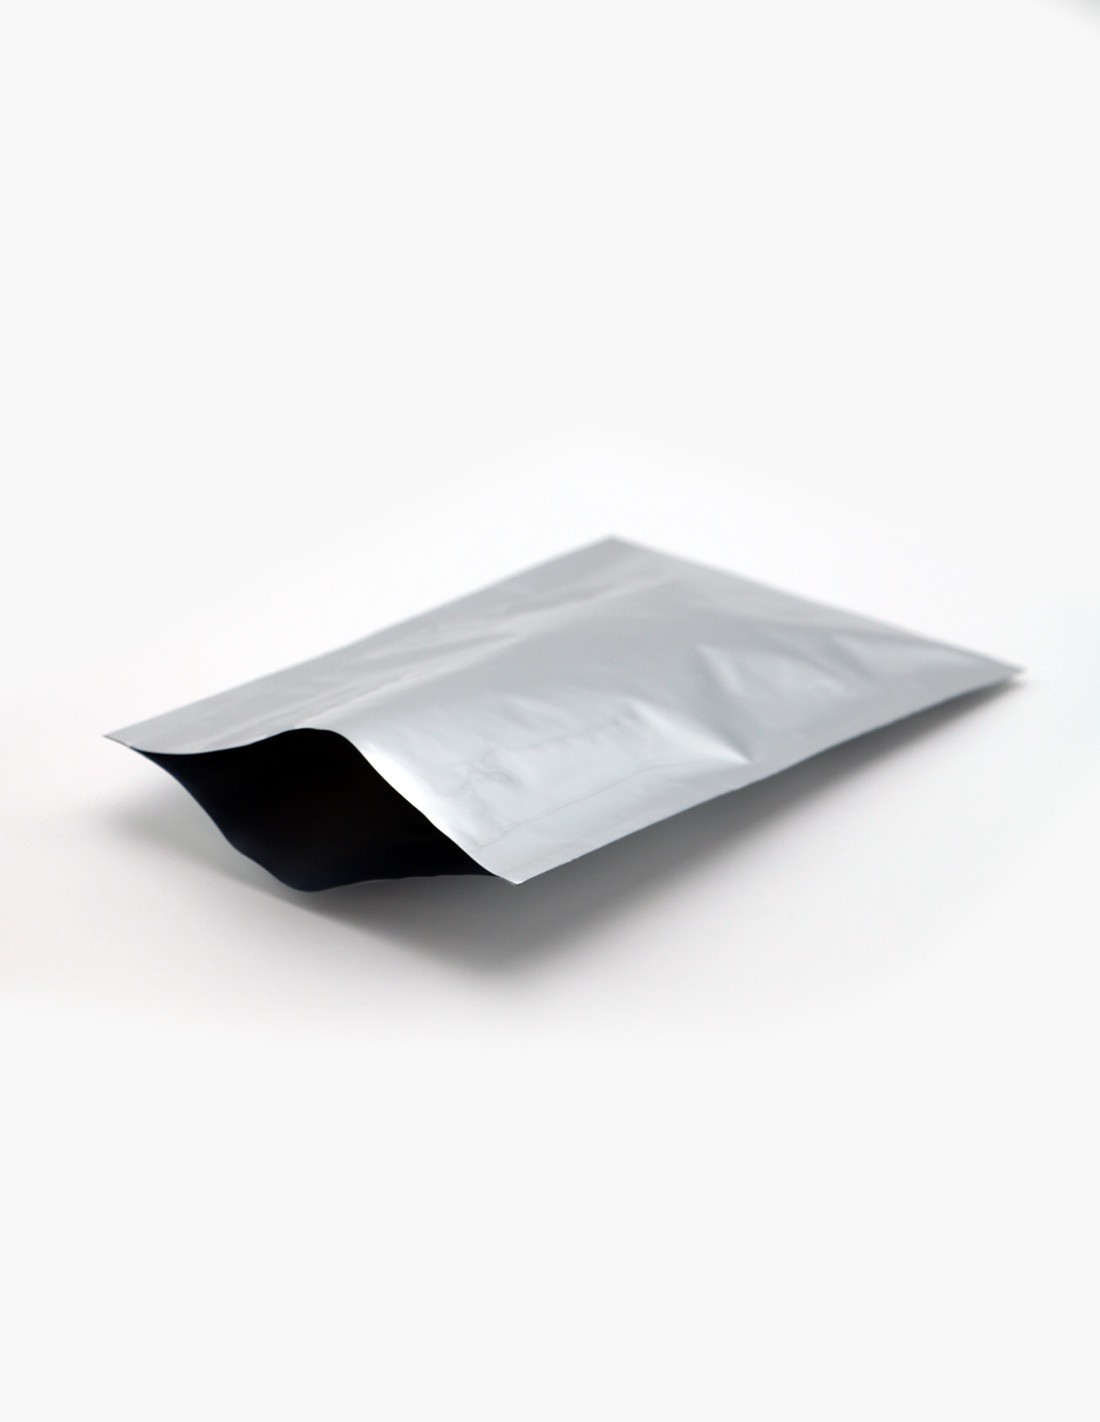 https://conservatis.com/323-thickbox_default/flat-laminated-aluminum-bags.jpg